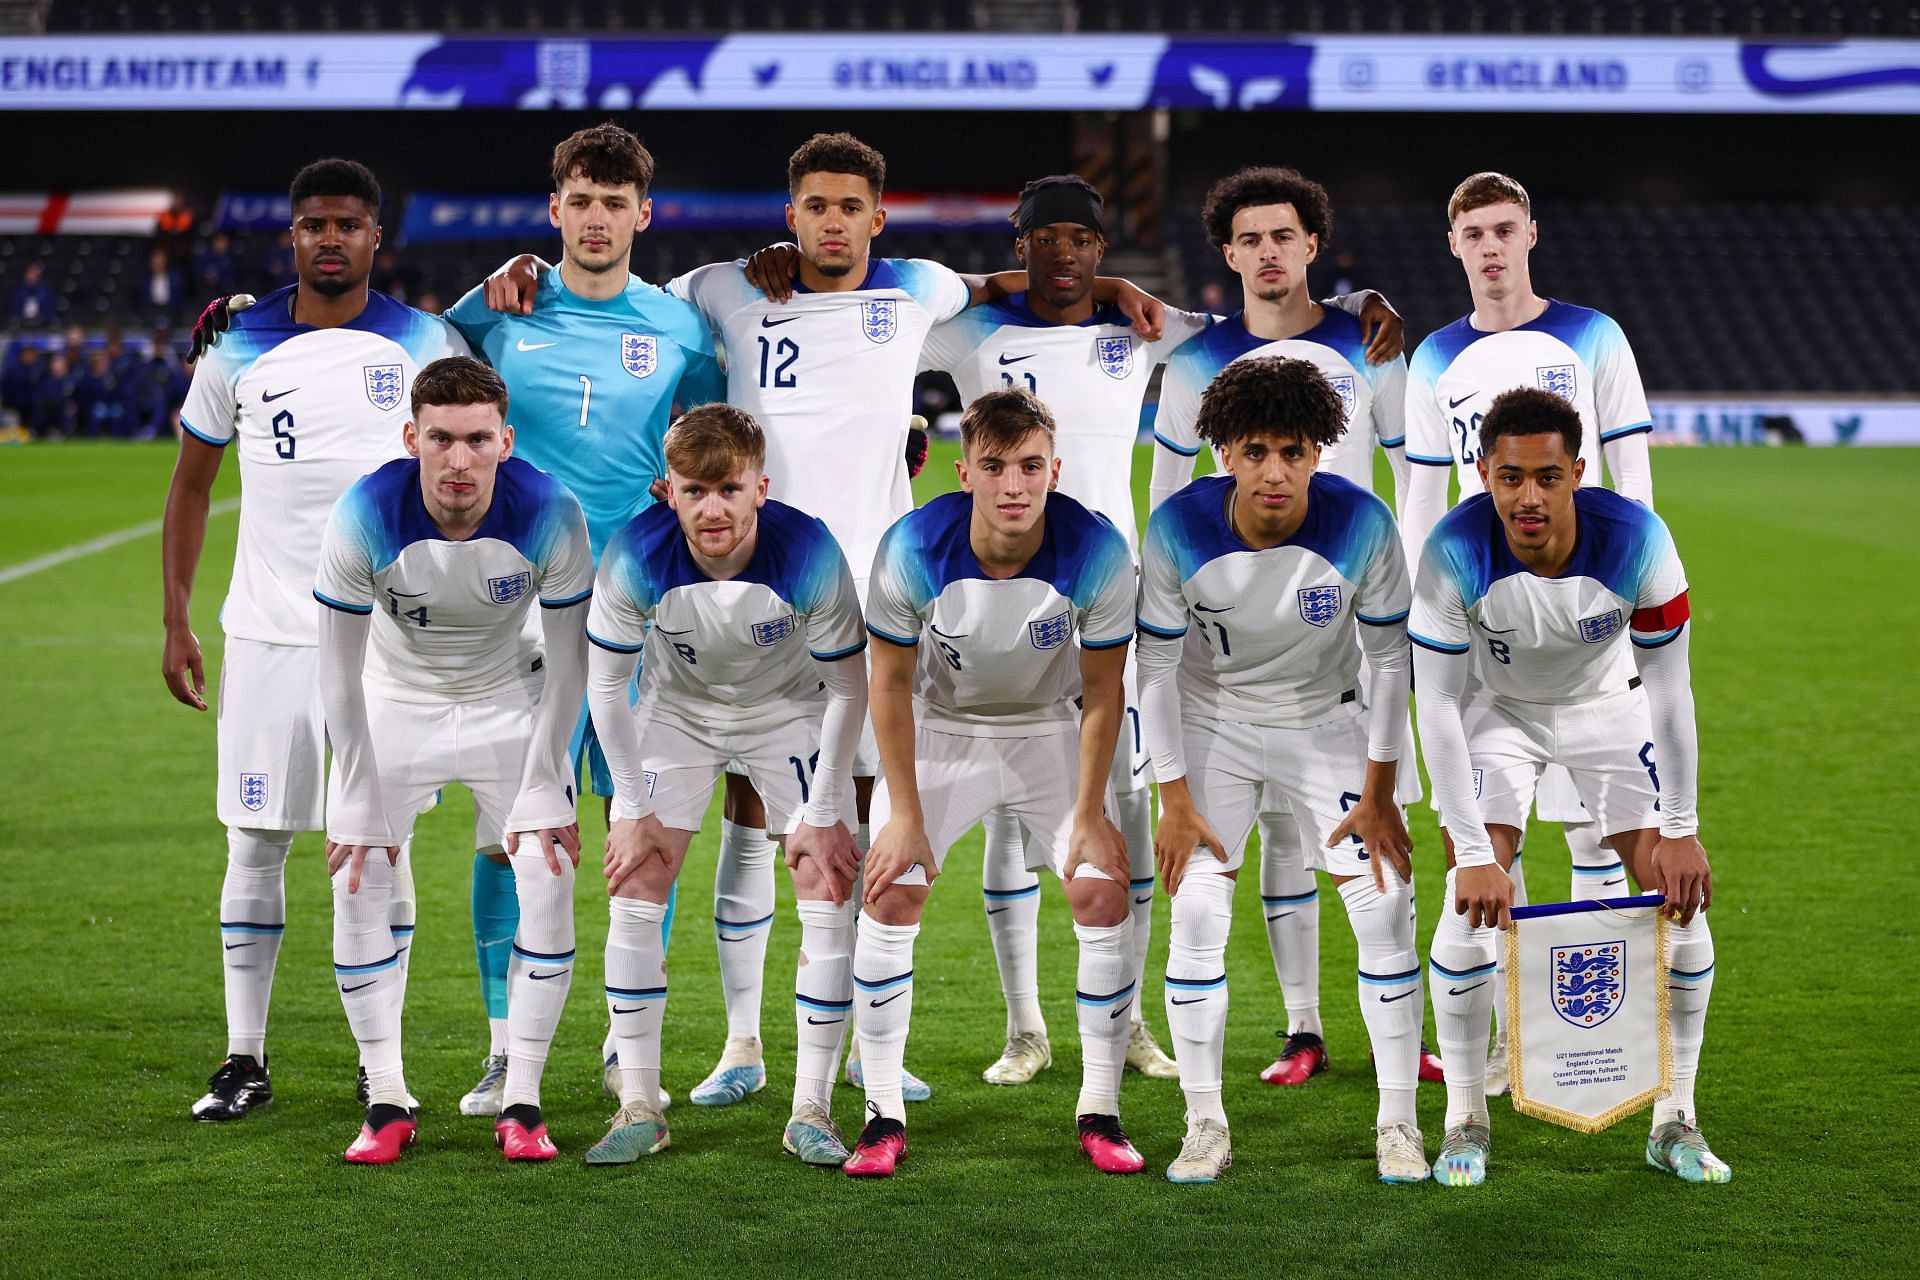 فازت إنجلترا تحت 21 على فرنسا تحت 21 سنة 4-0 لكنها خسرت 2-1 أمام كرواتيا تحت 21 سنة.